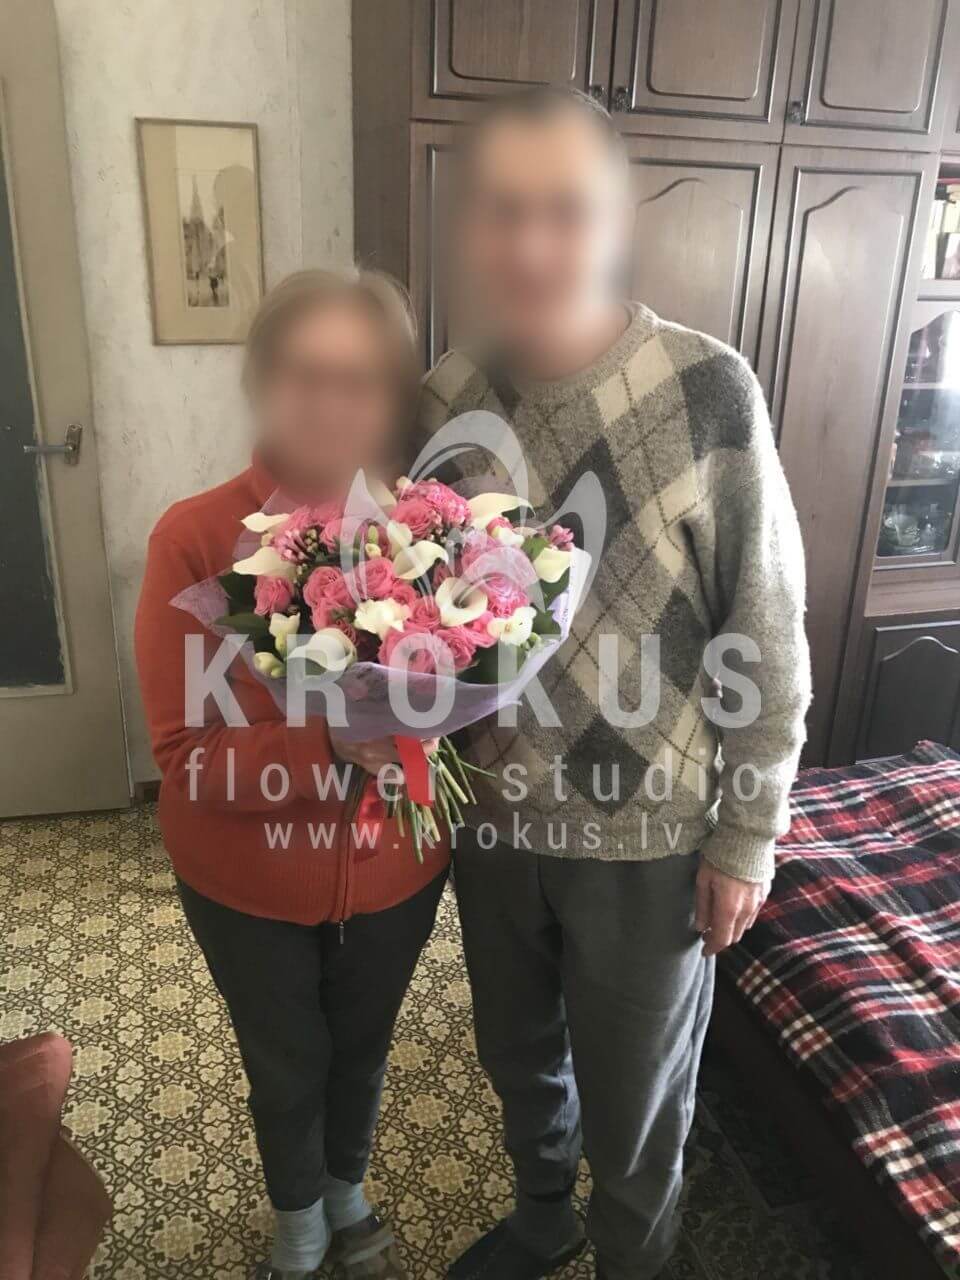 Доставка цветов в город Рига (кустовые розыкаллыфрезиибувардиясалал)